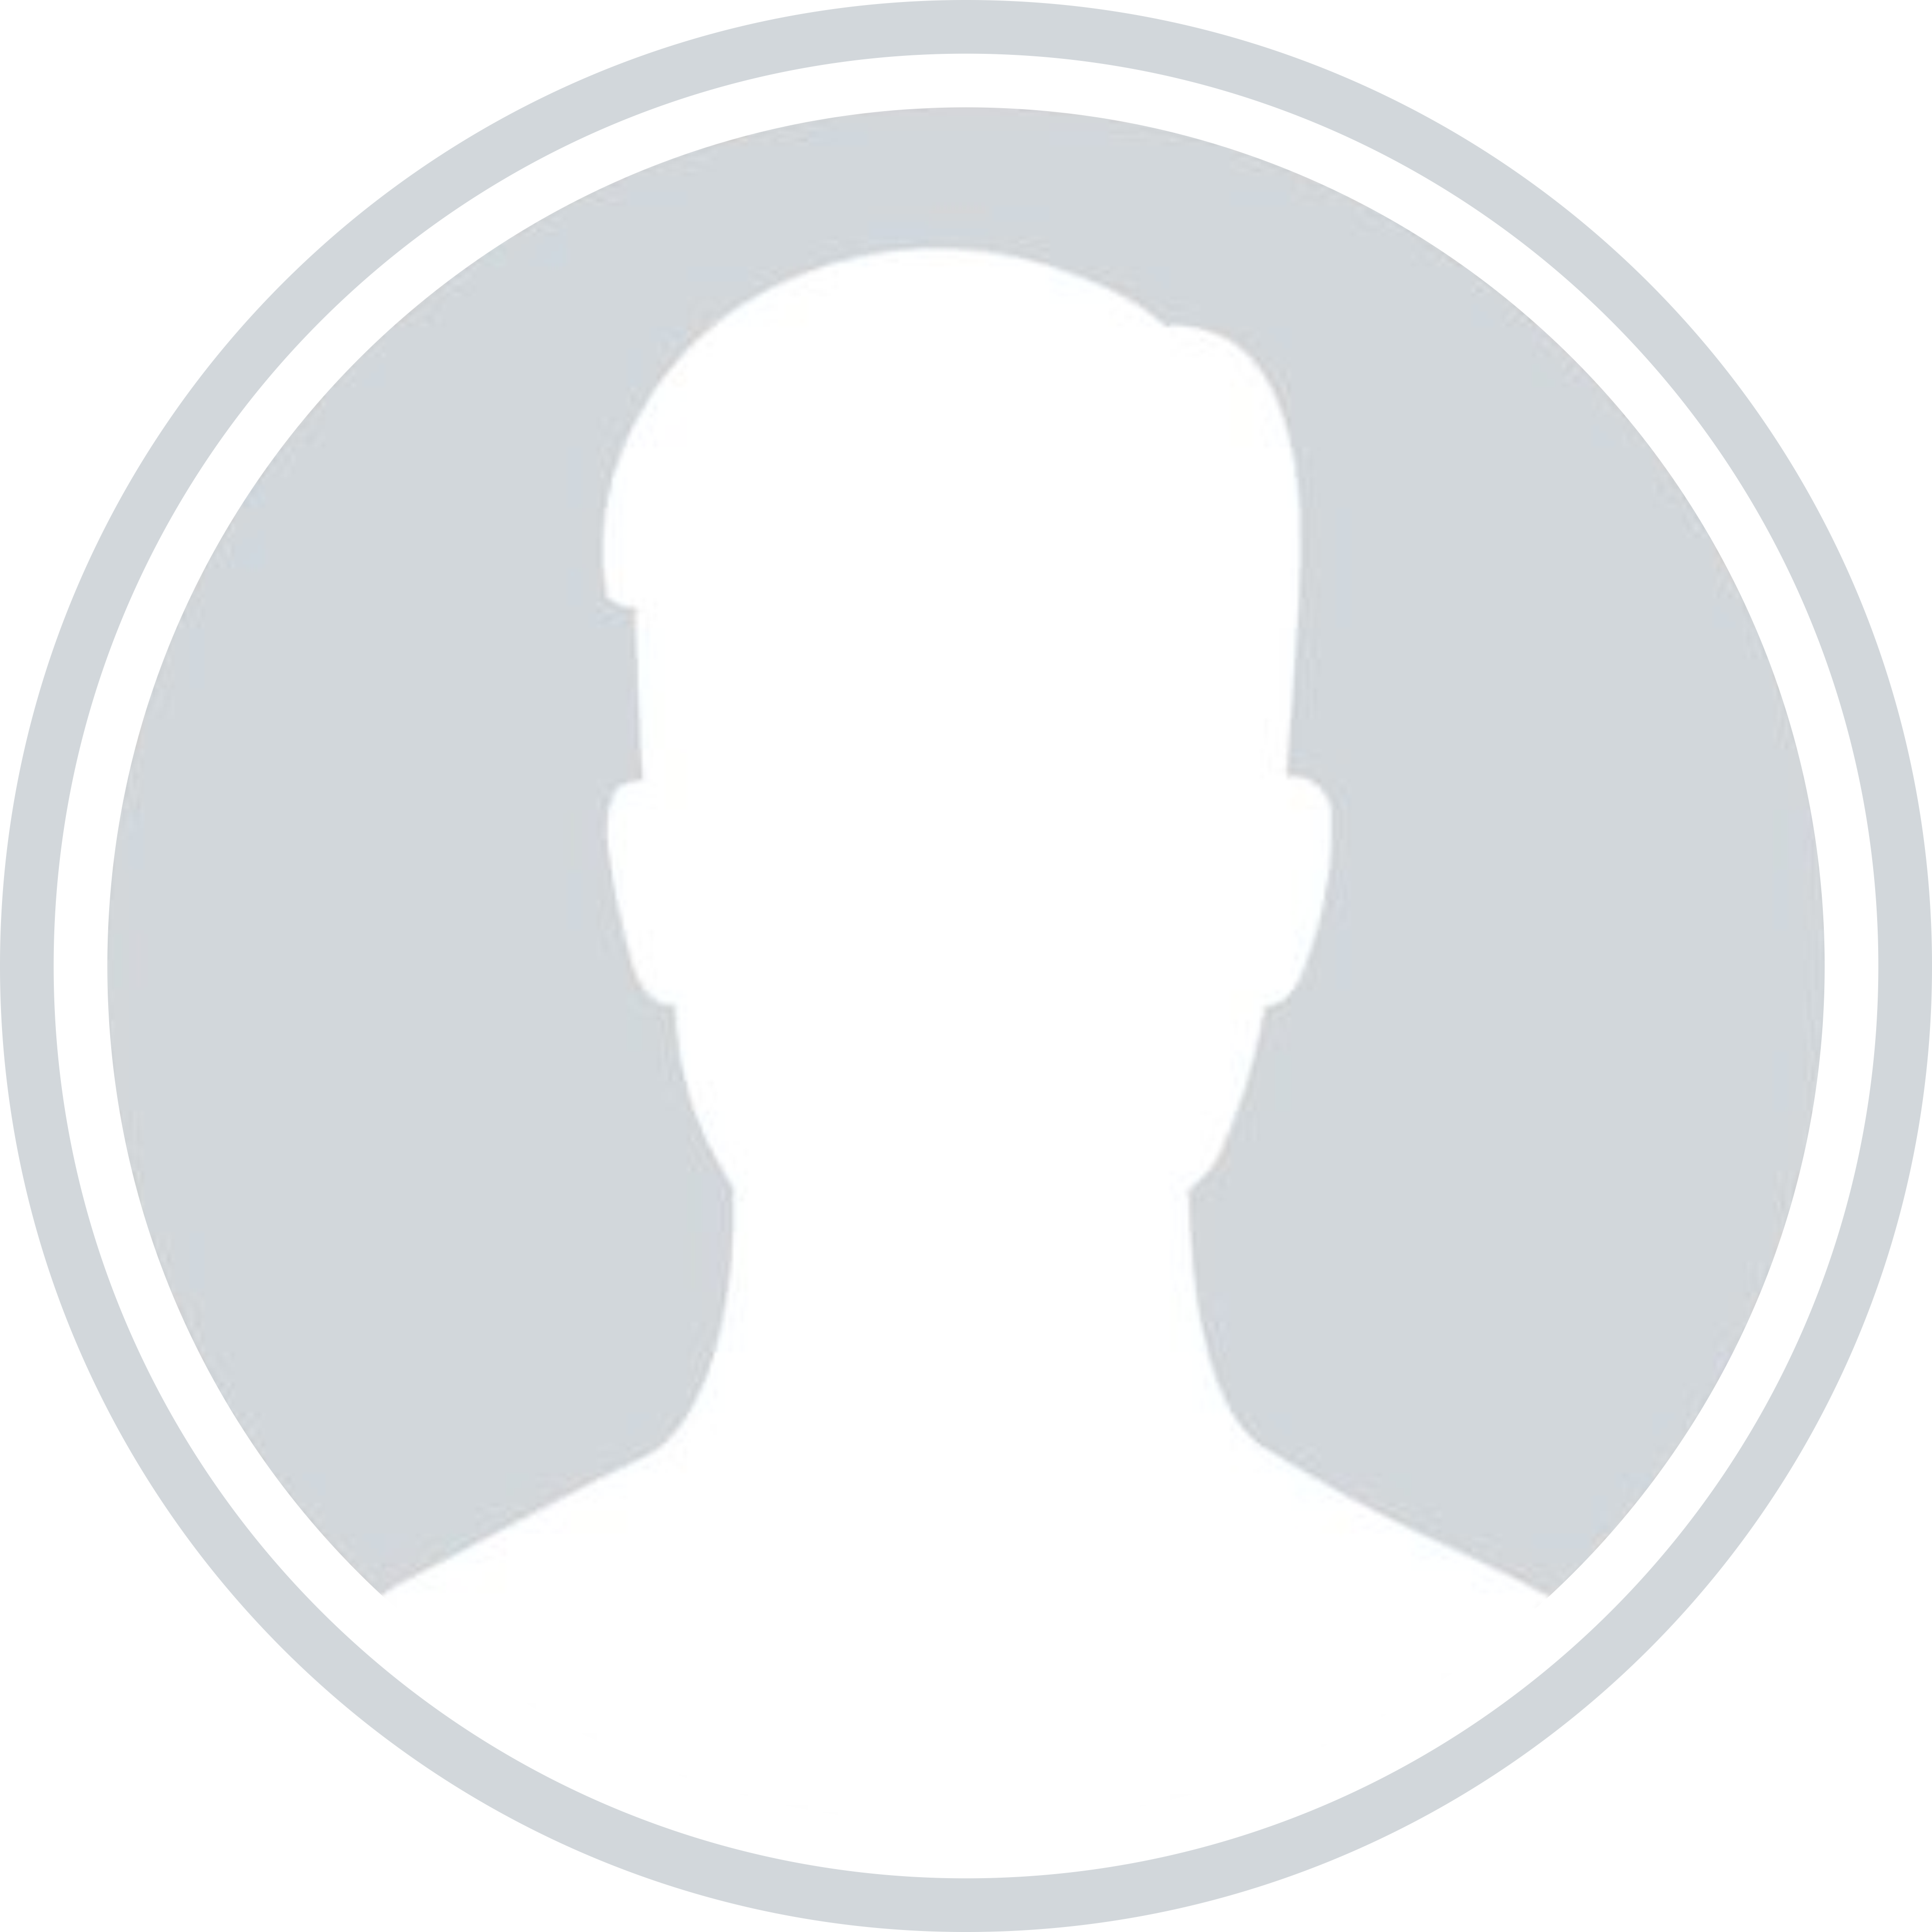 SawDesigns Profile Picture